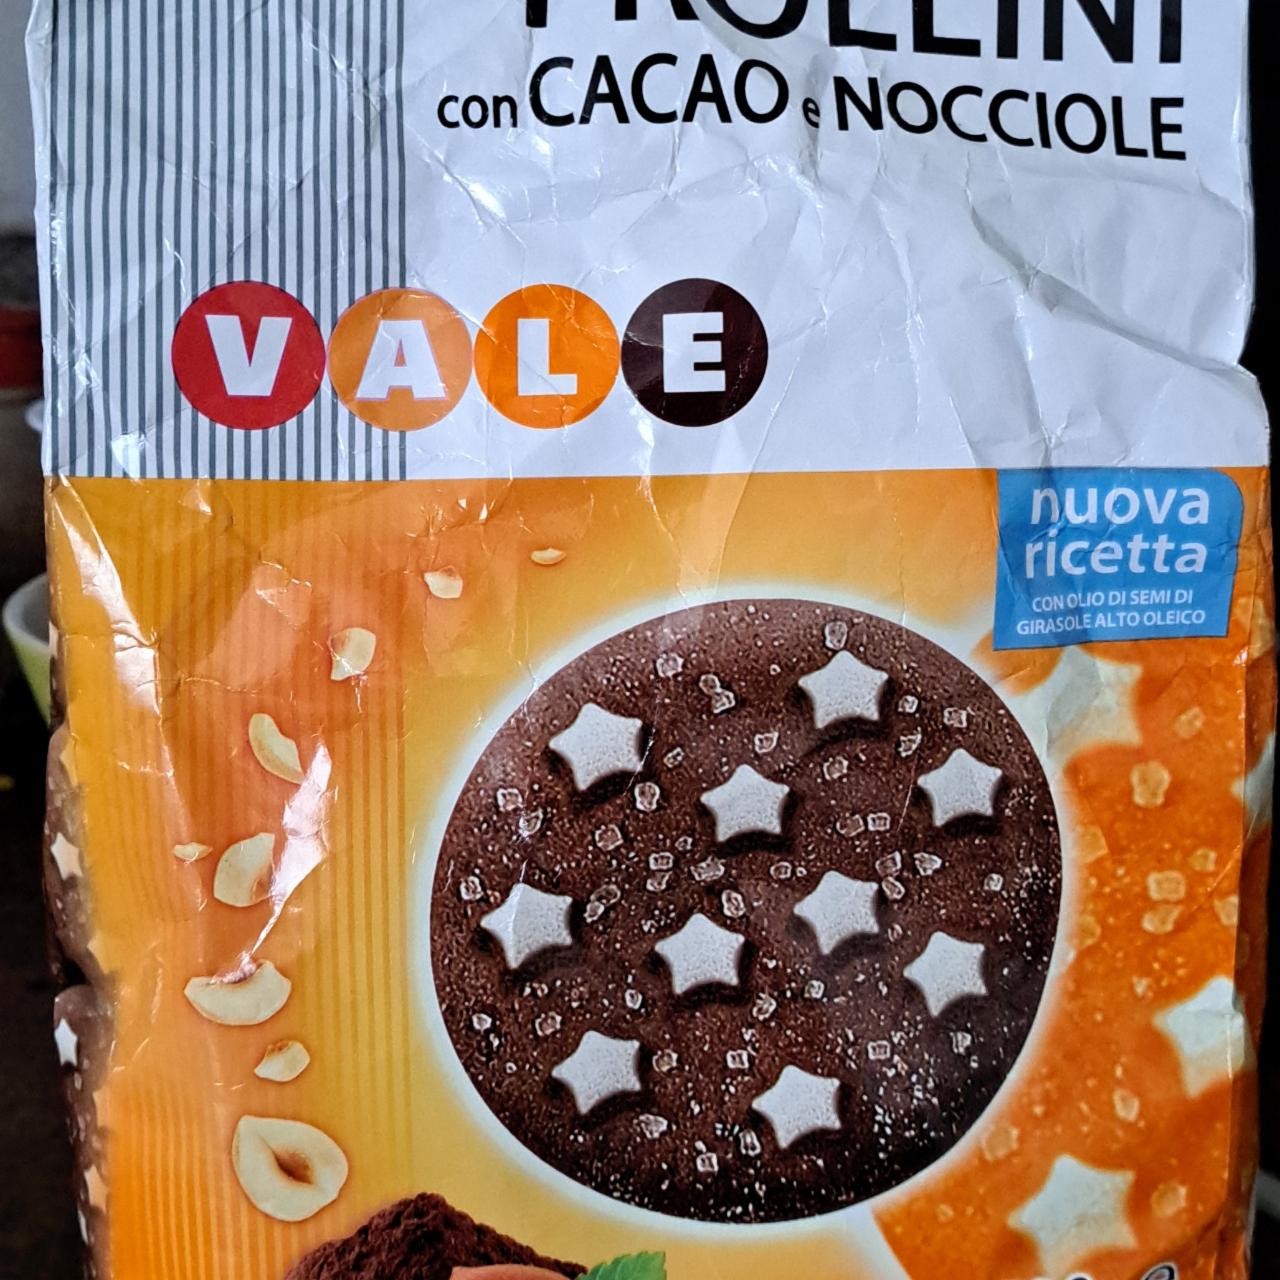 Фото - Печенье с какао и фундуком Frollini Vale